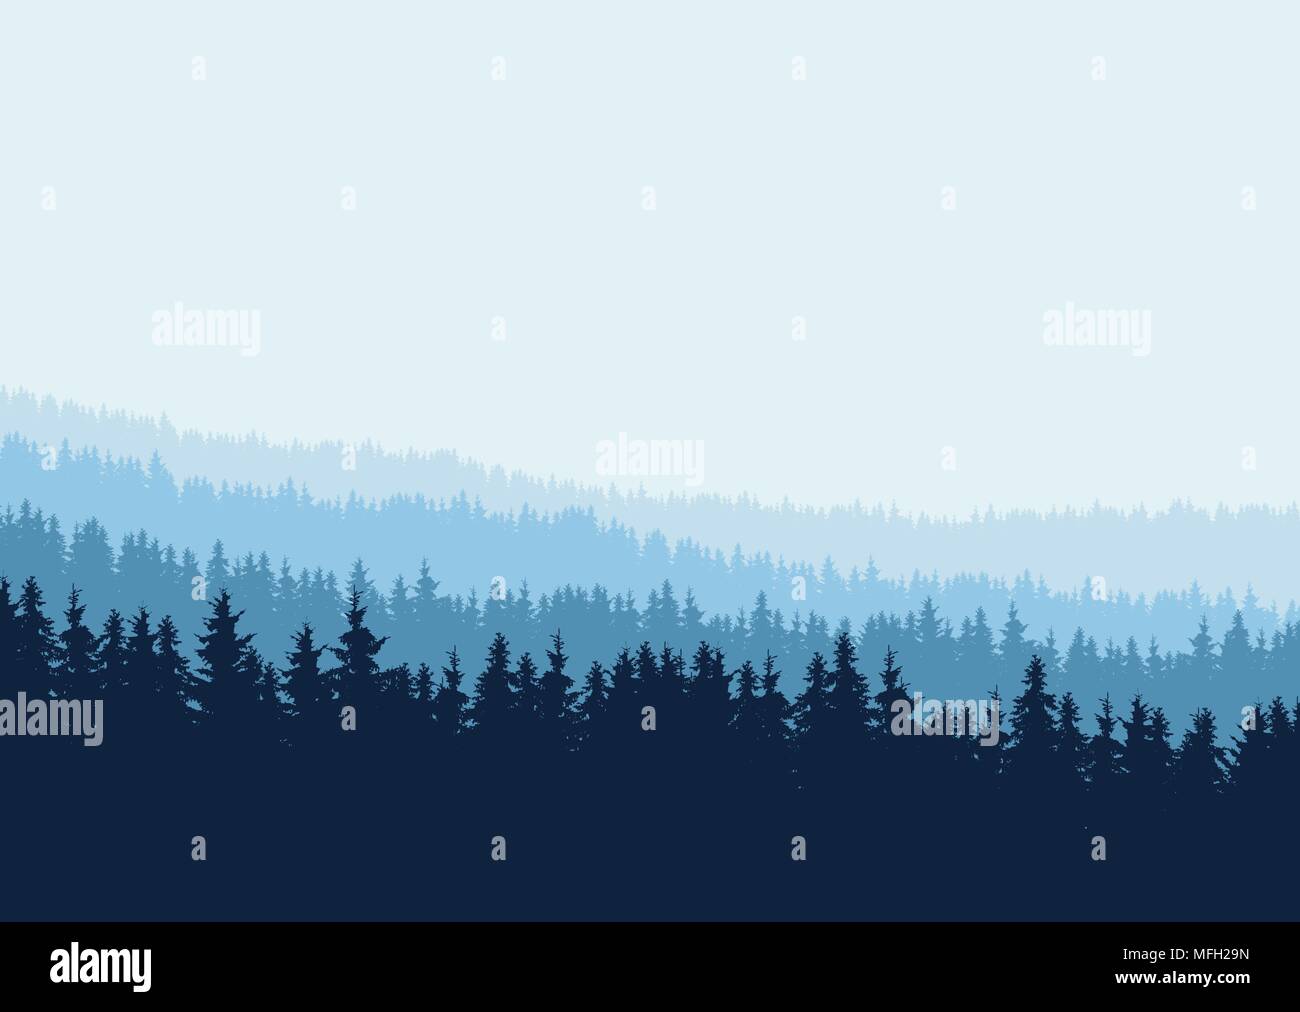 Realistische Nadelwald mit Silhouetten von Bäumen in mehreren Schichten unter blauem Himmel - Vektor mit Platz für Ihren Text Stock Vektor